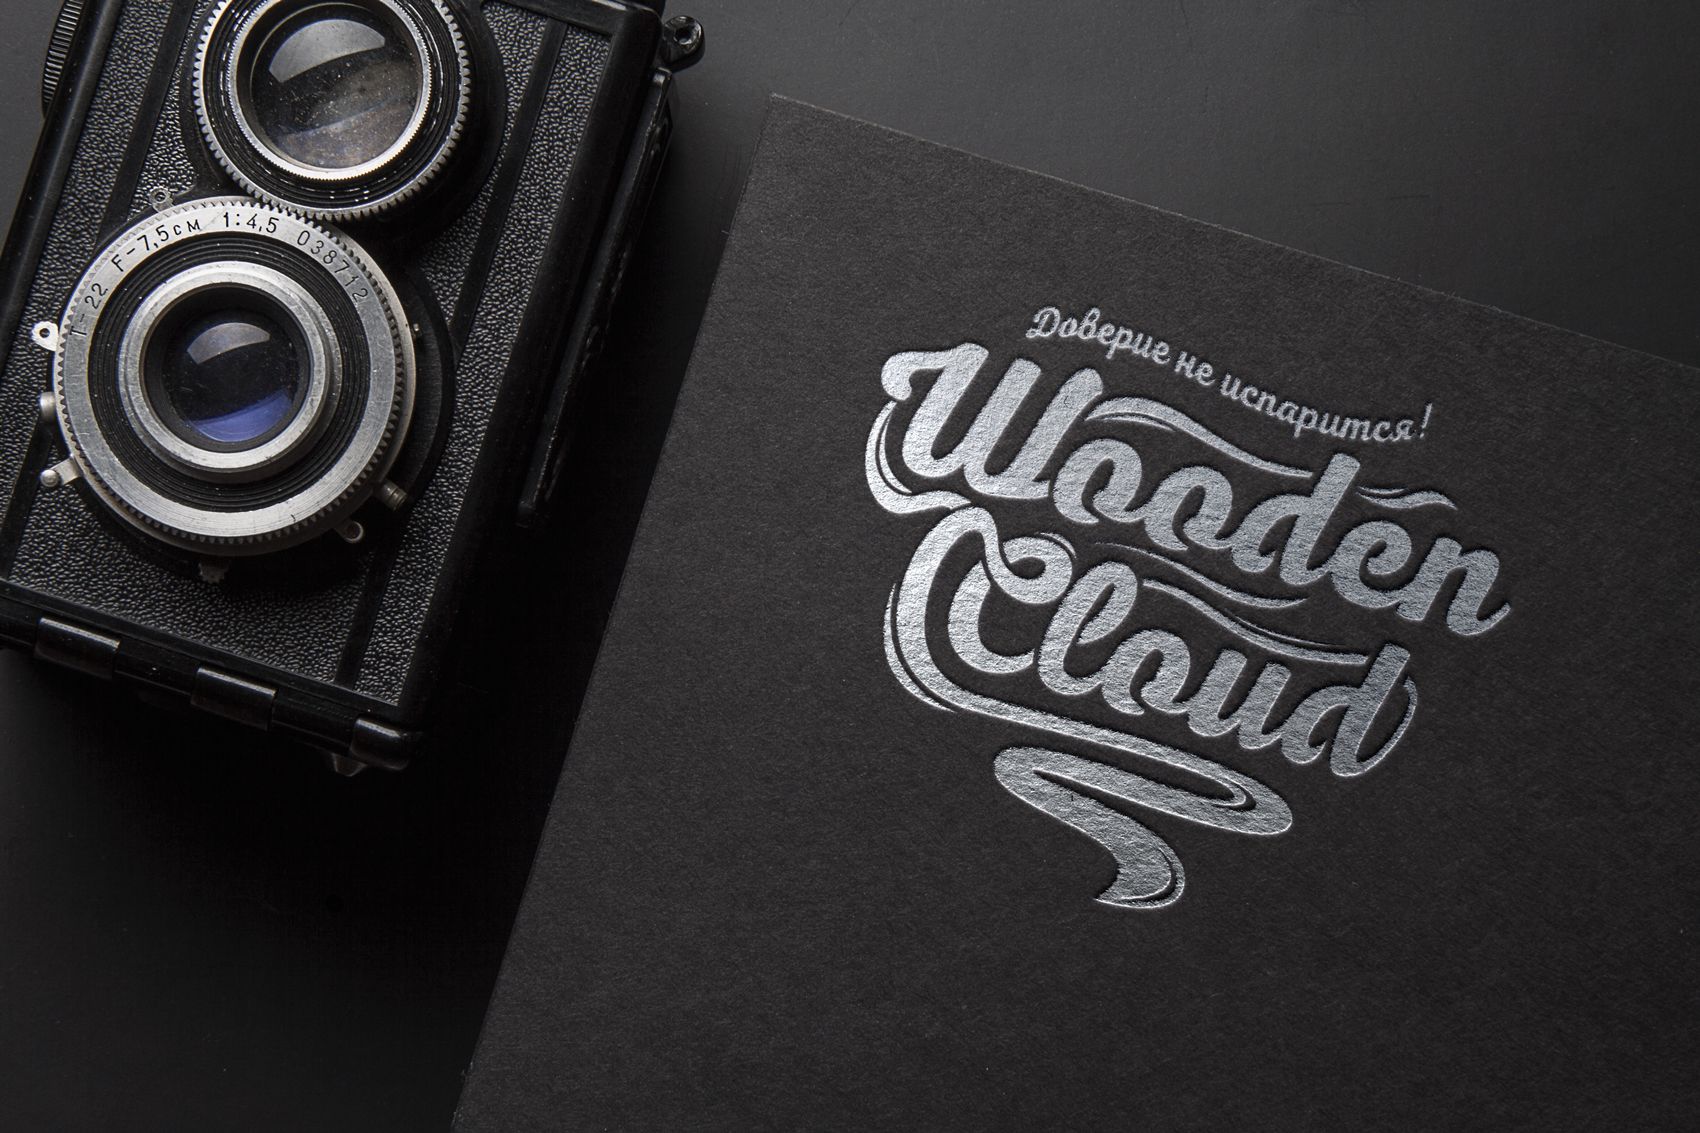 Логотип для wooden cloud - дизайнер V_Sofeev